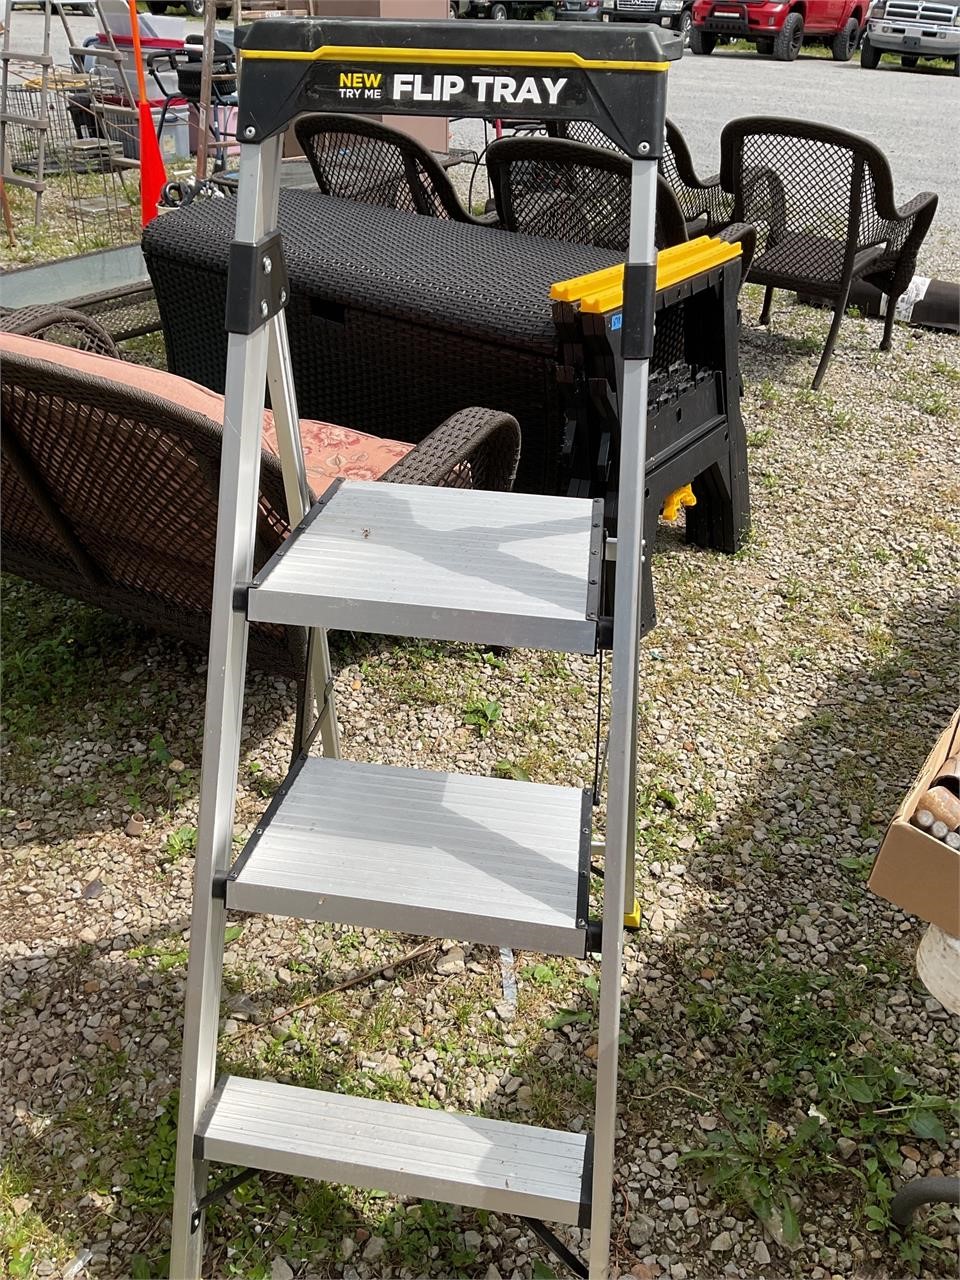 Flip tray 5 foot ladder